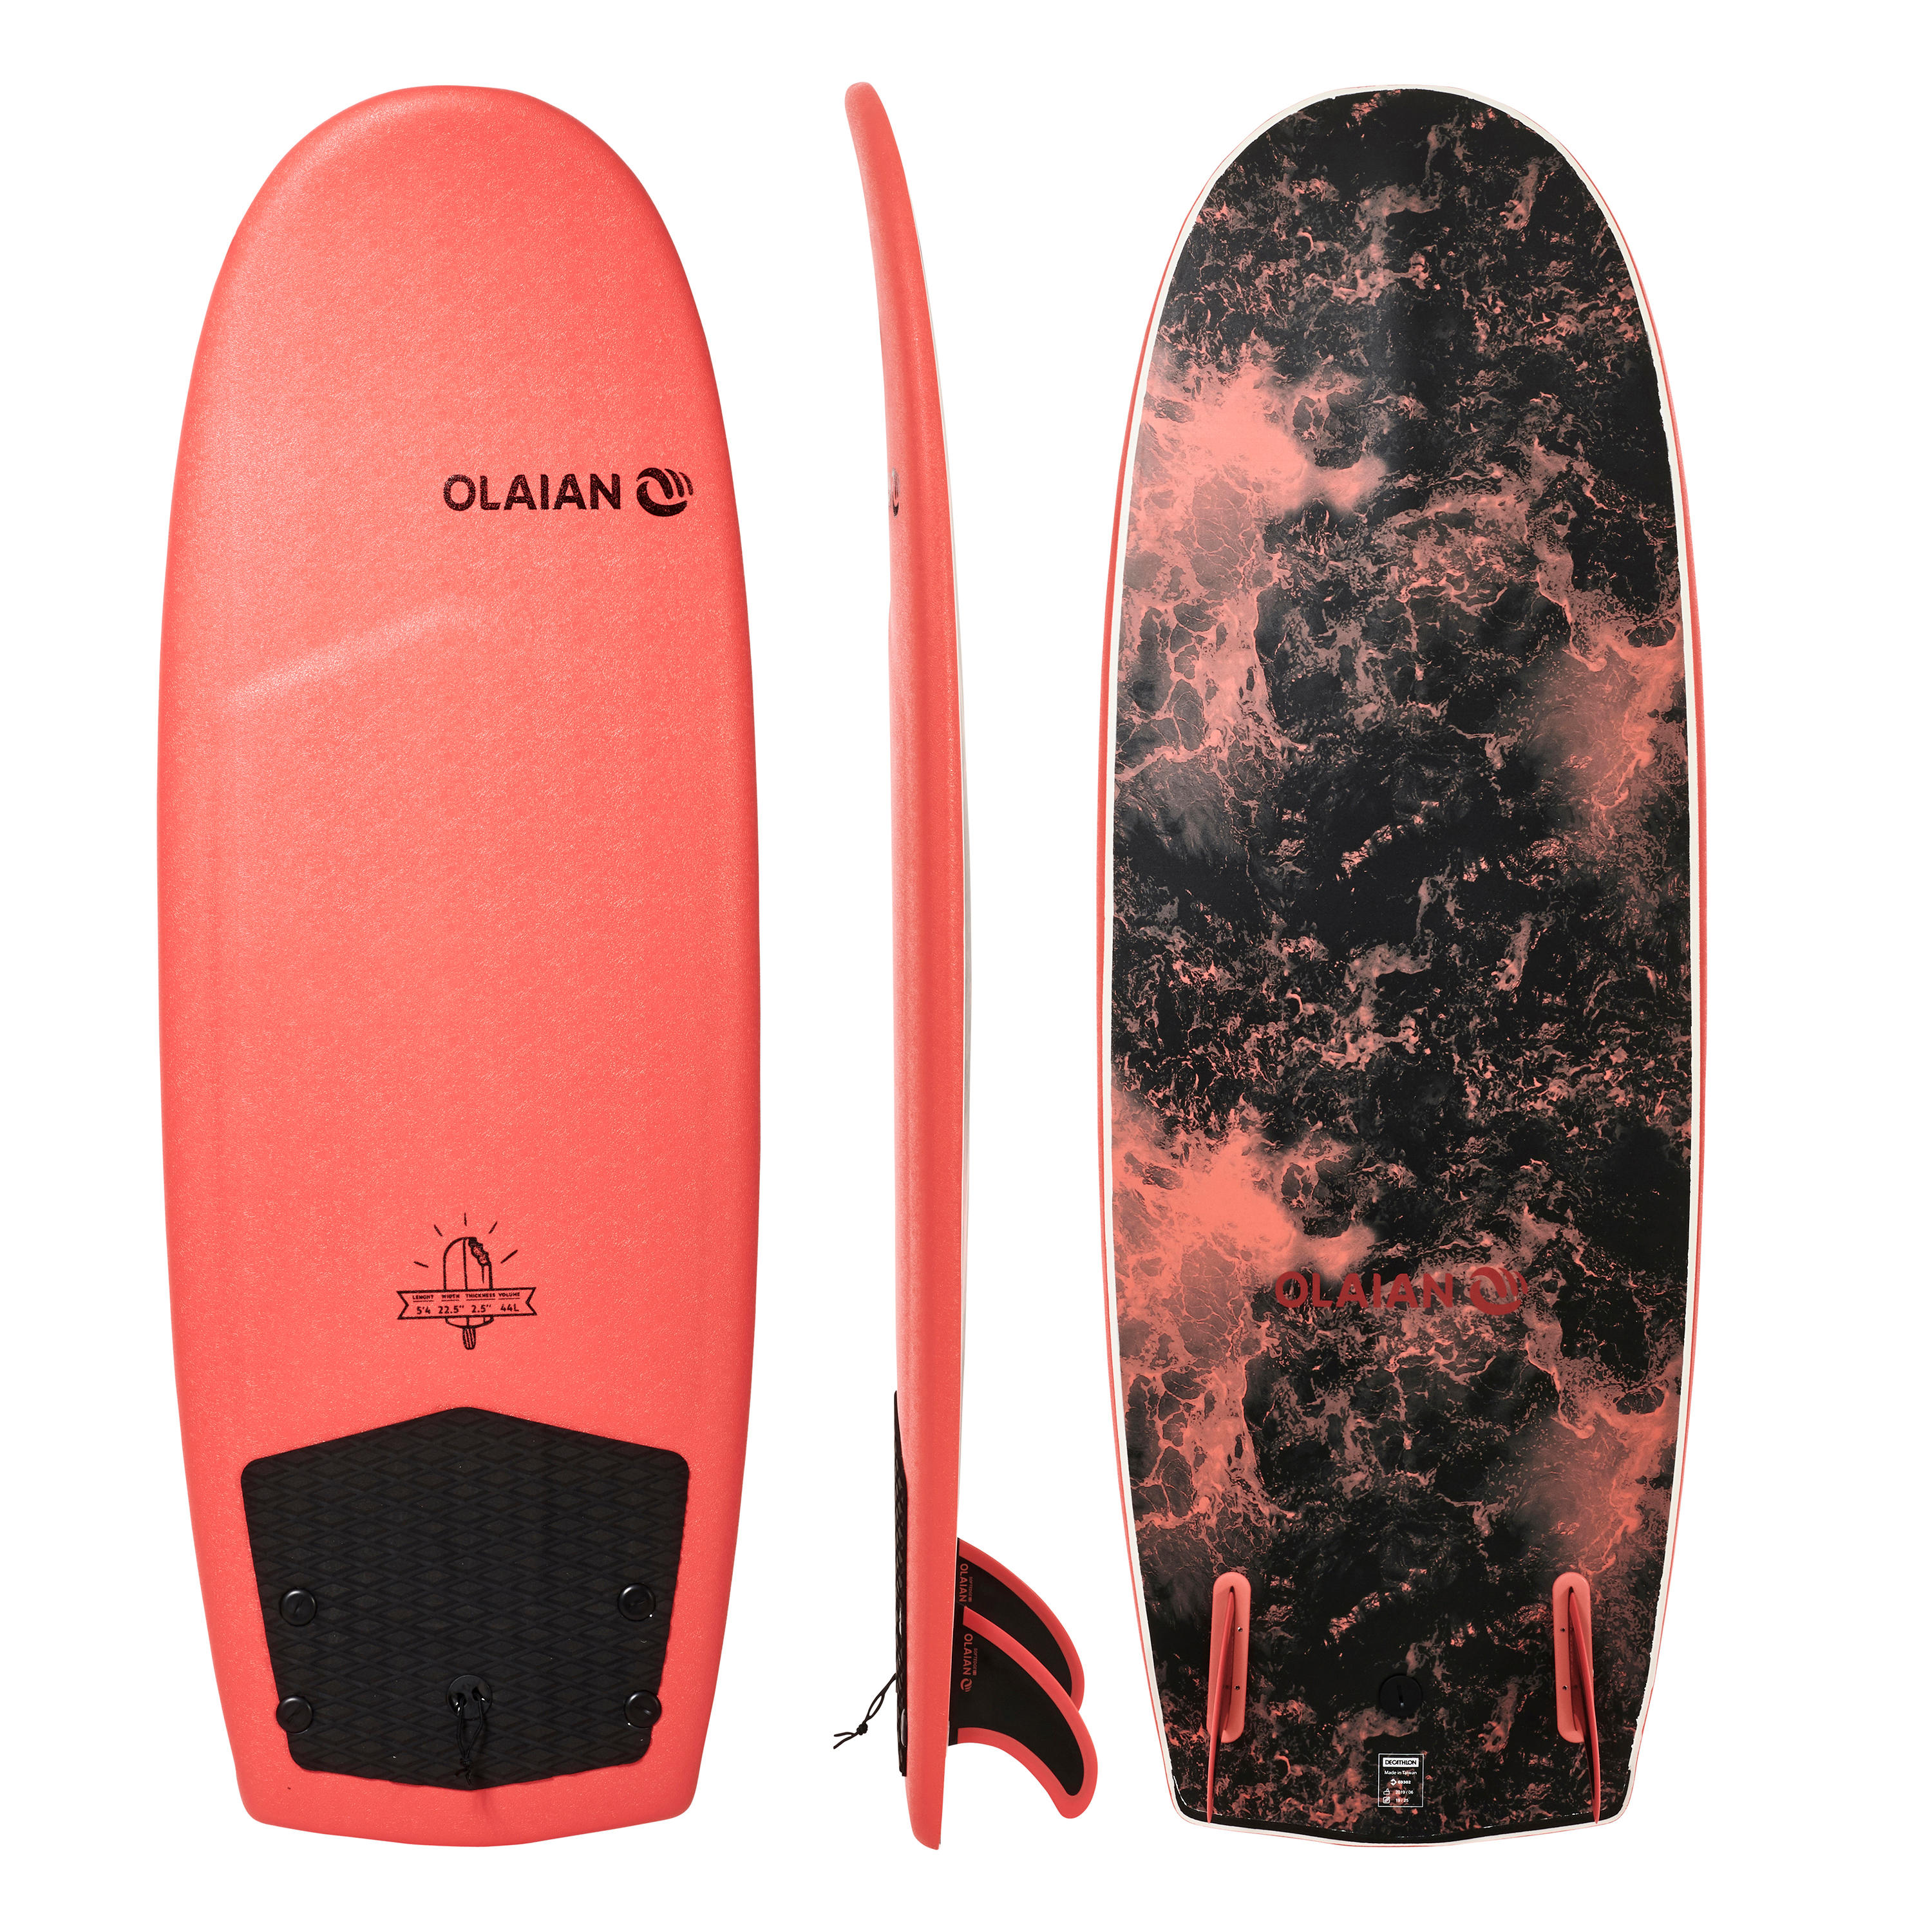 FOAM SURFBOARD 900 5'4" with 2 fins. 1/9